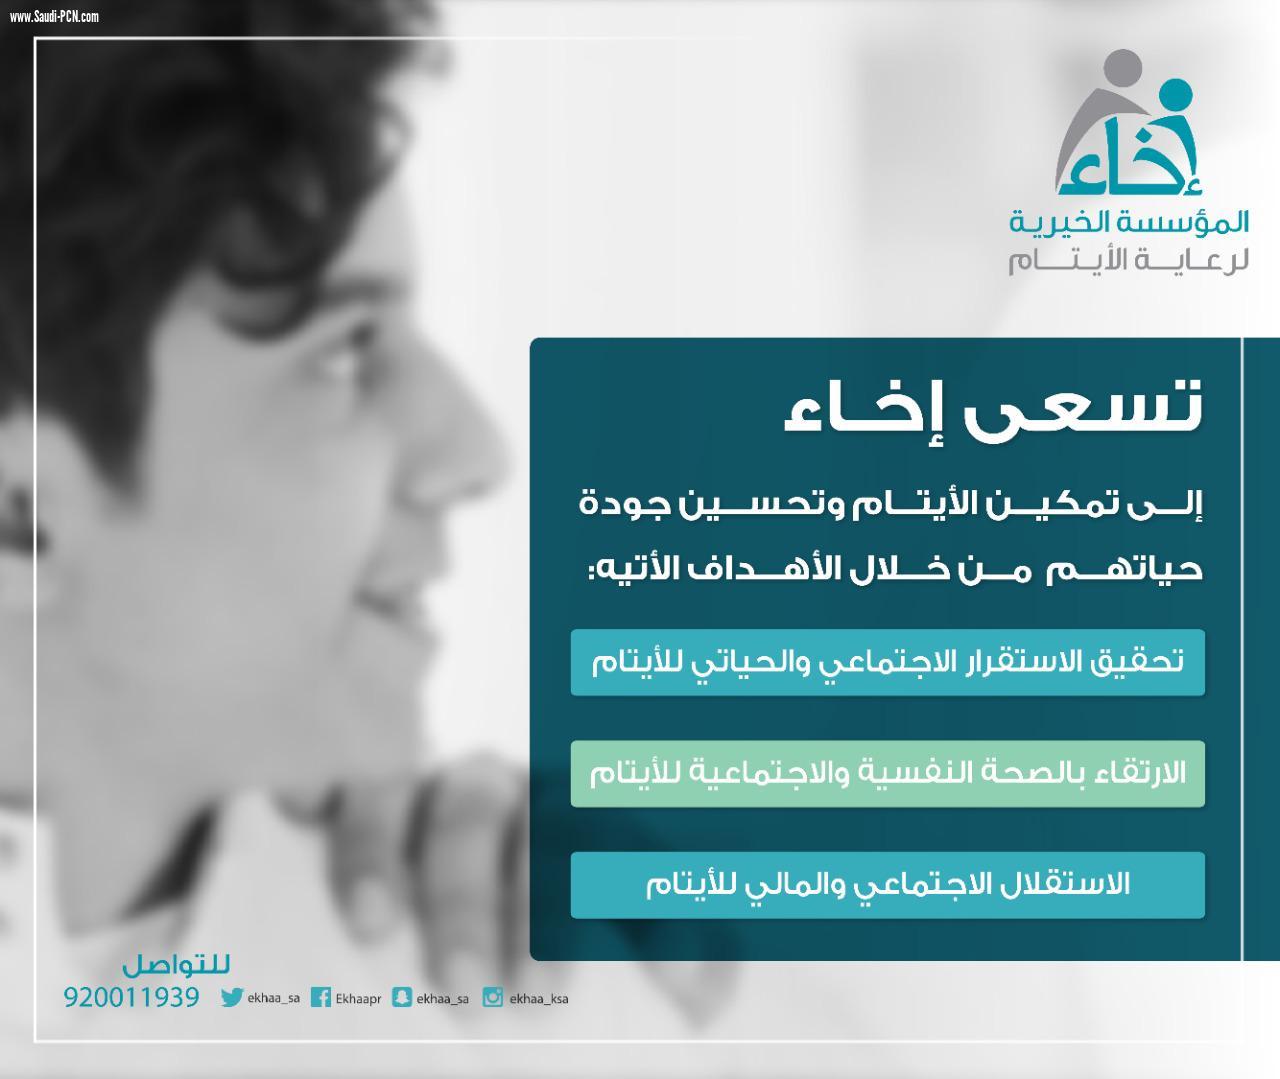 جمعية إخاء تتلقى دعماً و مساندة من الأميرة حصة بنت سلمان بن عبد العزيز